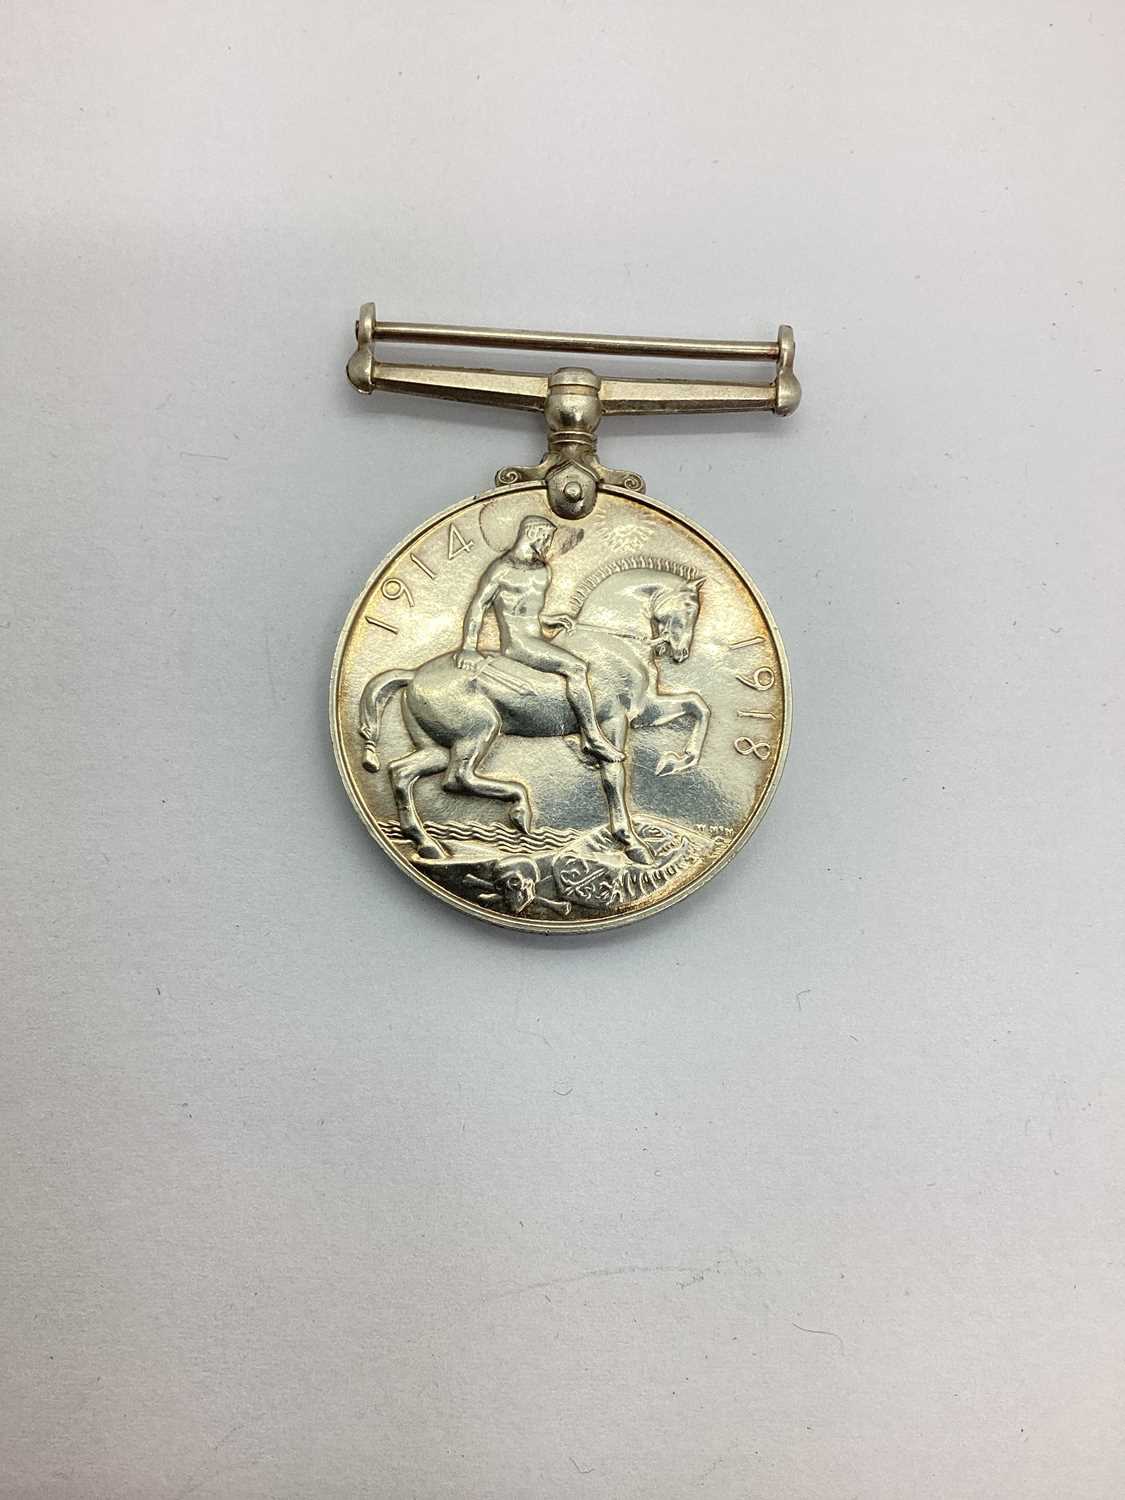 WWI British War Medal, awarded to Lieut K Greig RNR